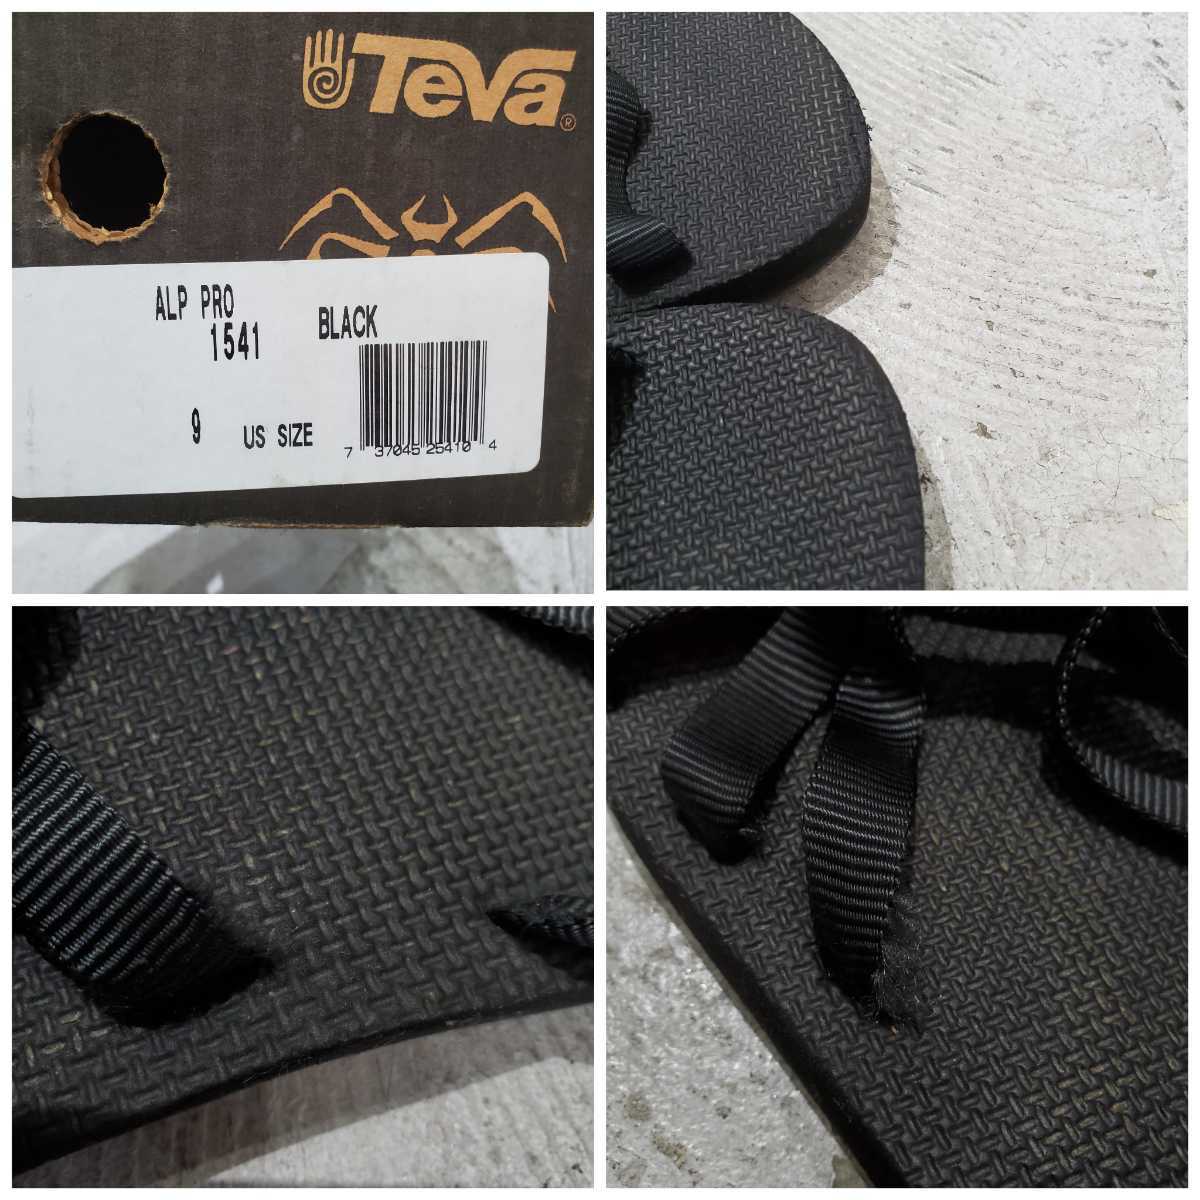 Teva テバ spider rubber スパイダー ラバー モデル サンダル ブラック サイズ US9